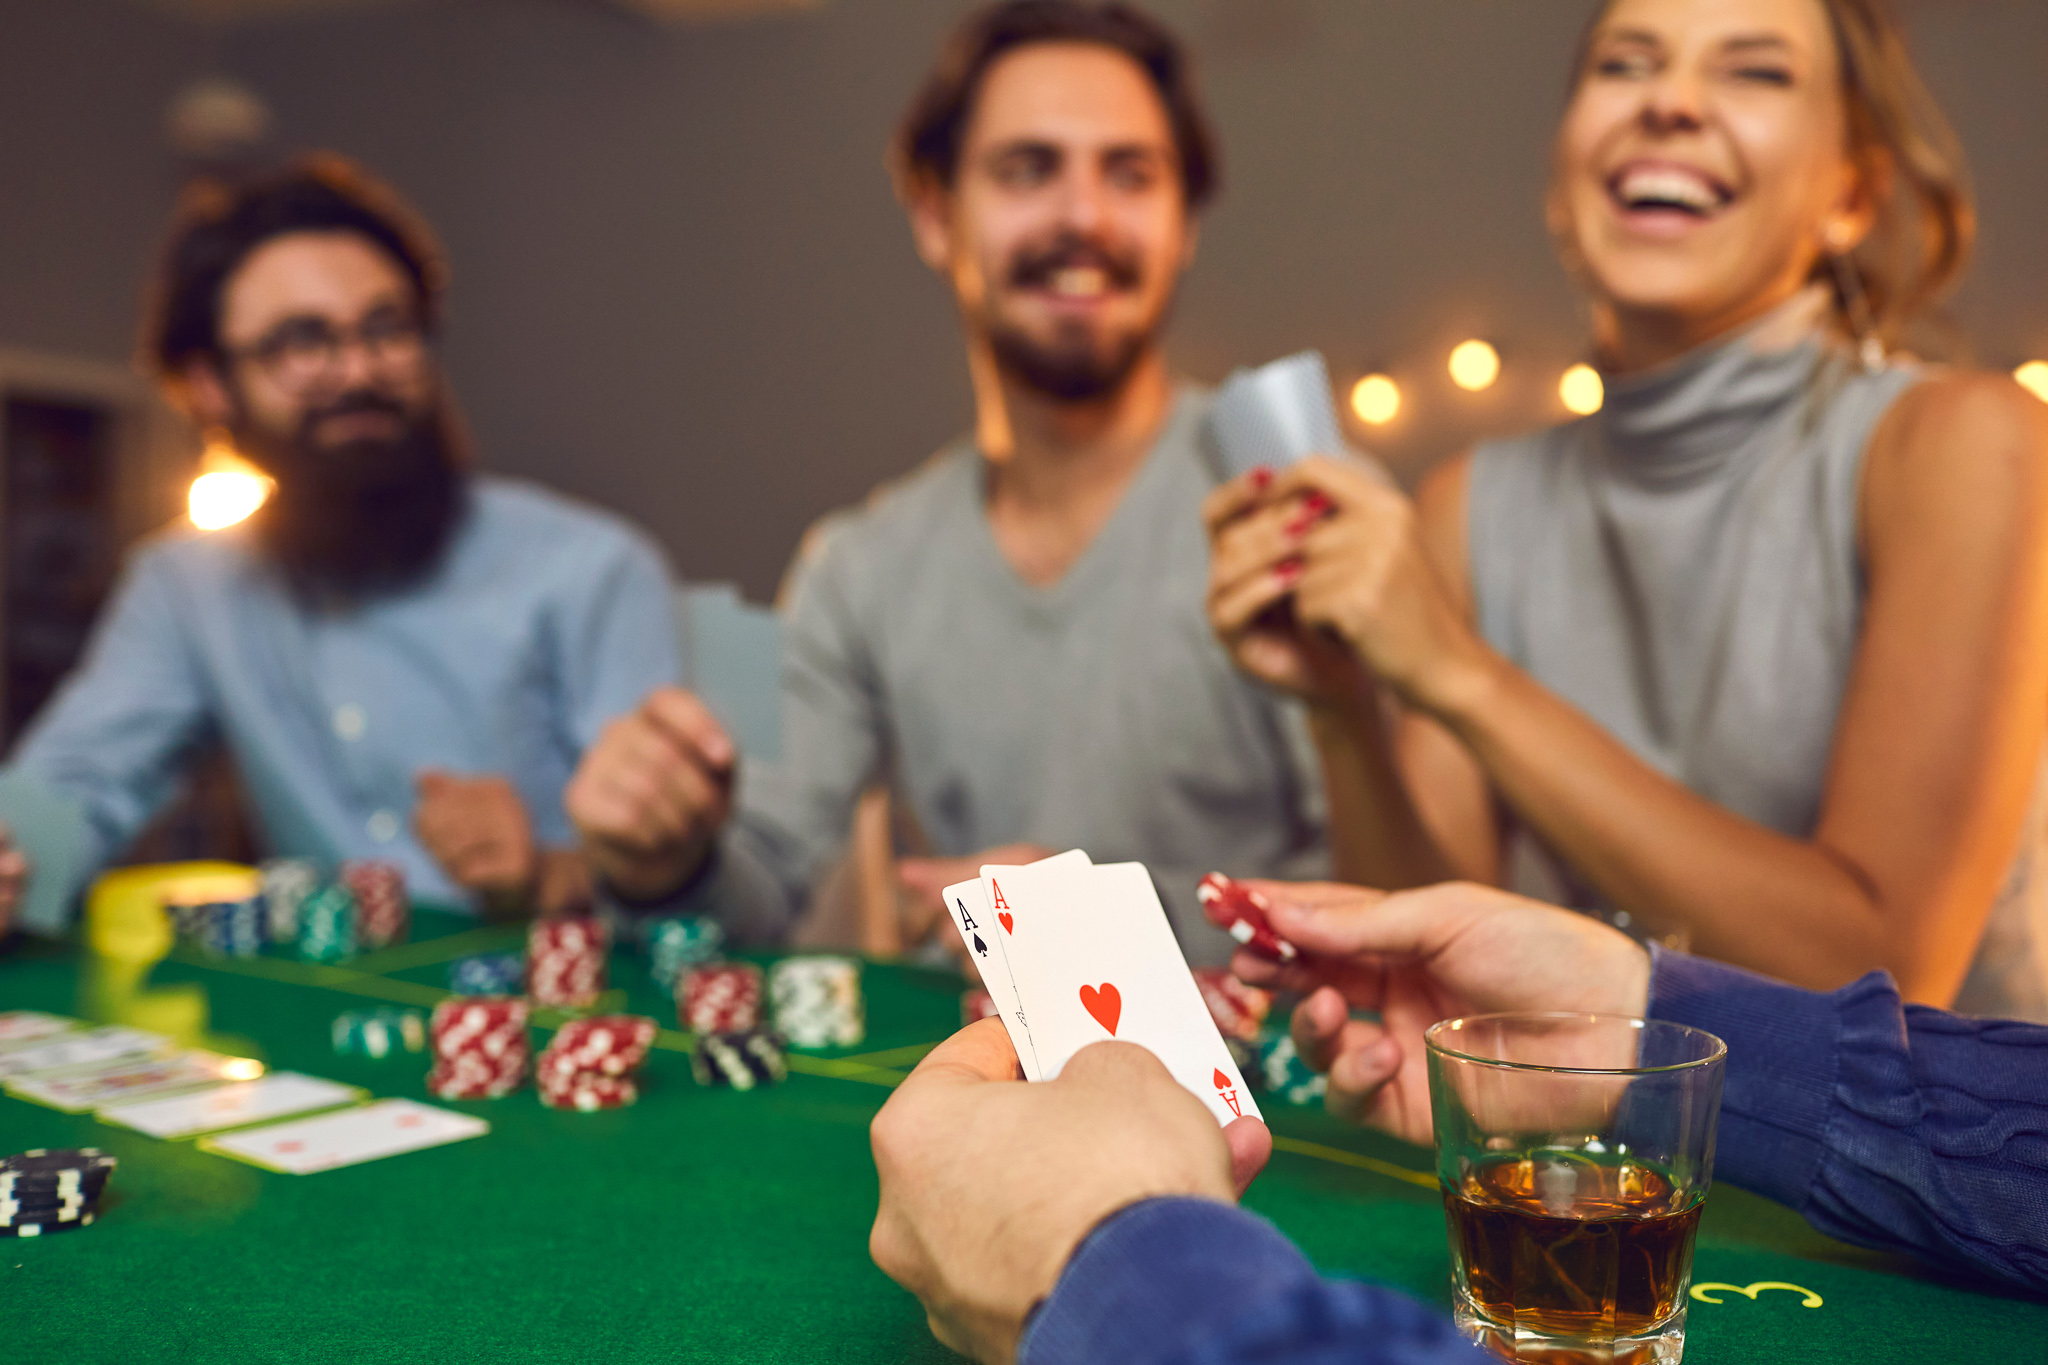 Poker Strategies | กลยุทธ์กะเทาะจิตใจมนุษย์หลังเกมไพ่  ที่สามารถนำมาปรับใช้ในชีวิตจริง